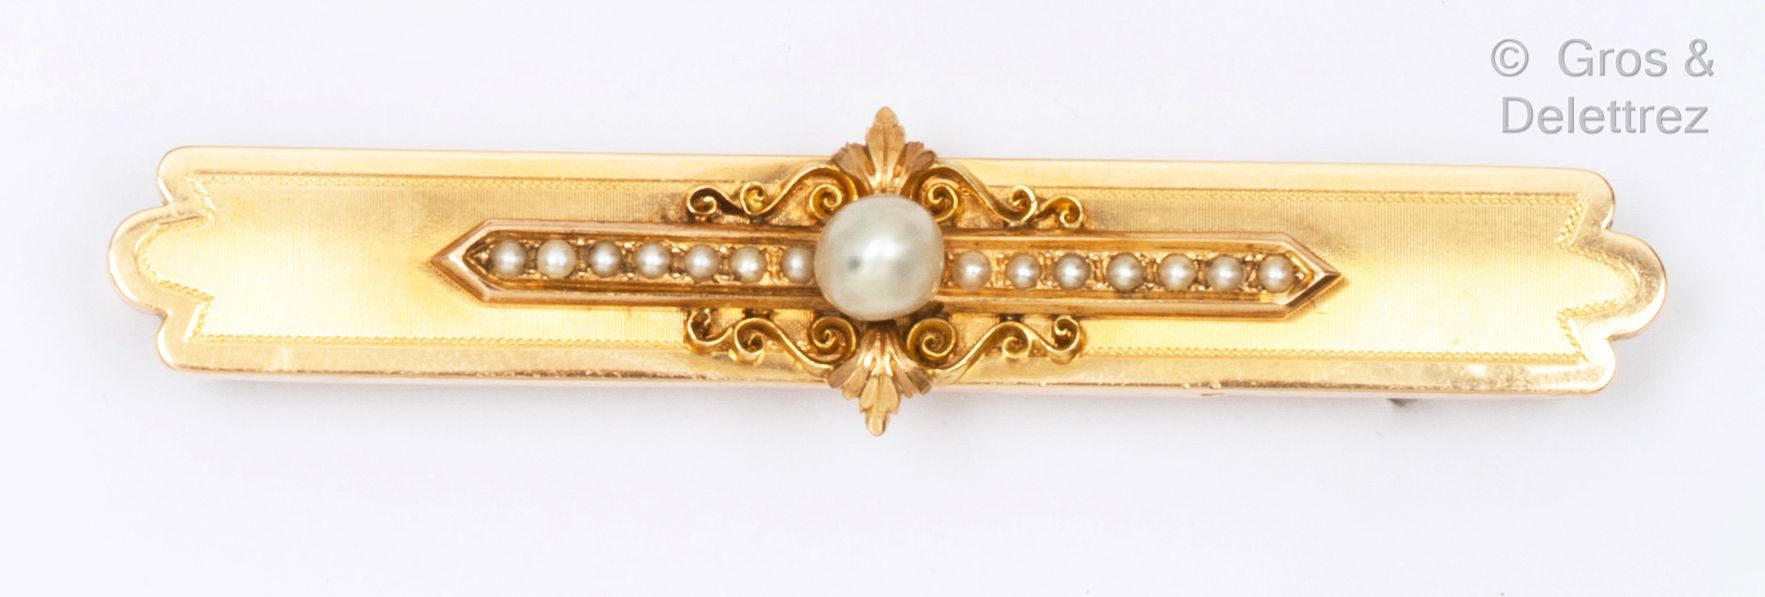 Null 一枚黄金 "Barette "胸针，部分有条纹，在卷轴和百合花中镶嵌了一颗养殖珍珠，并有精美的珍珠。长度：7厘米。毛重：9.7克。